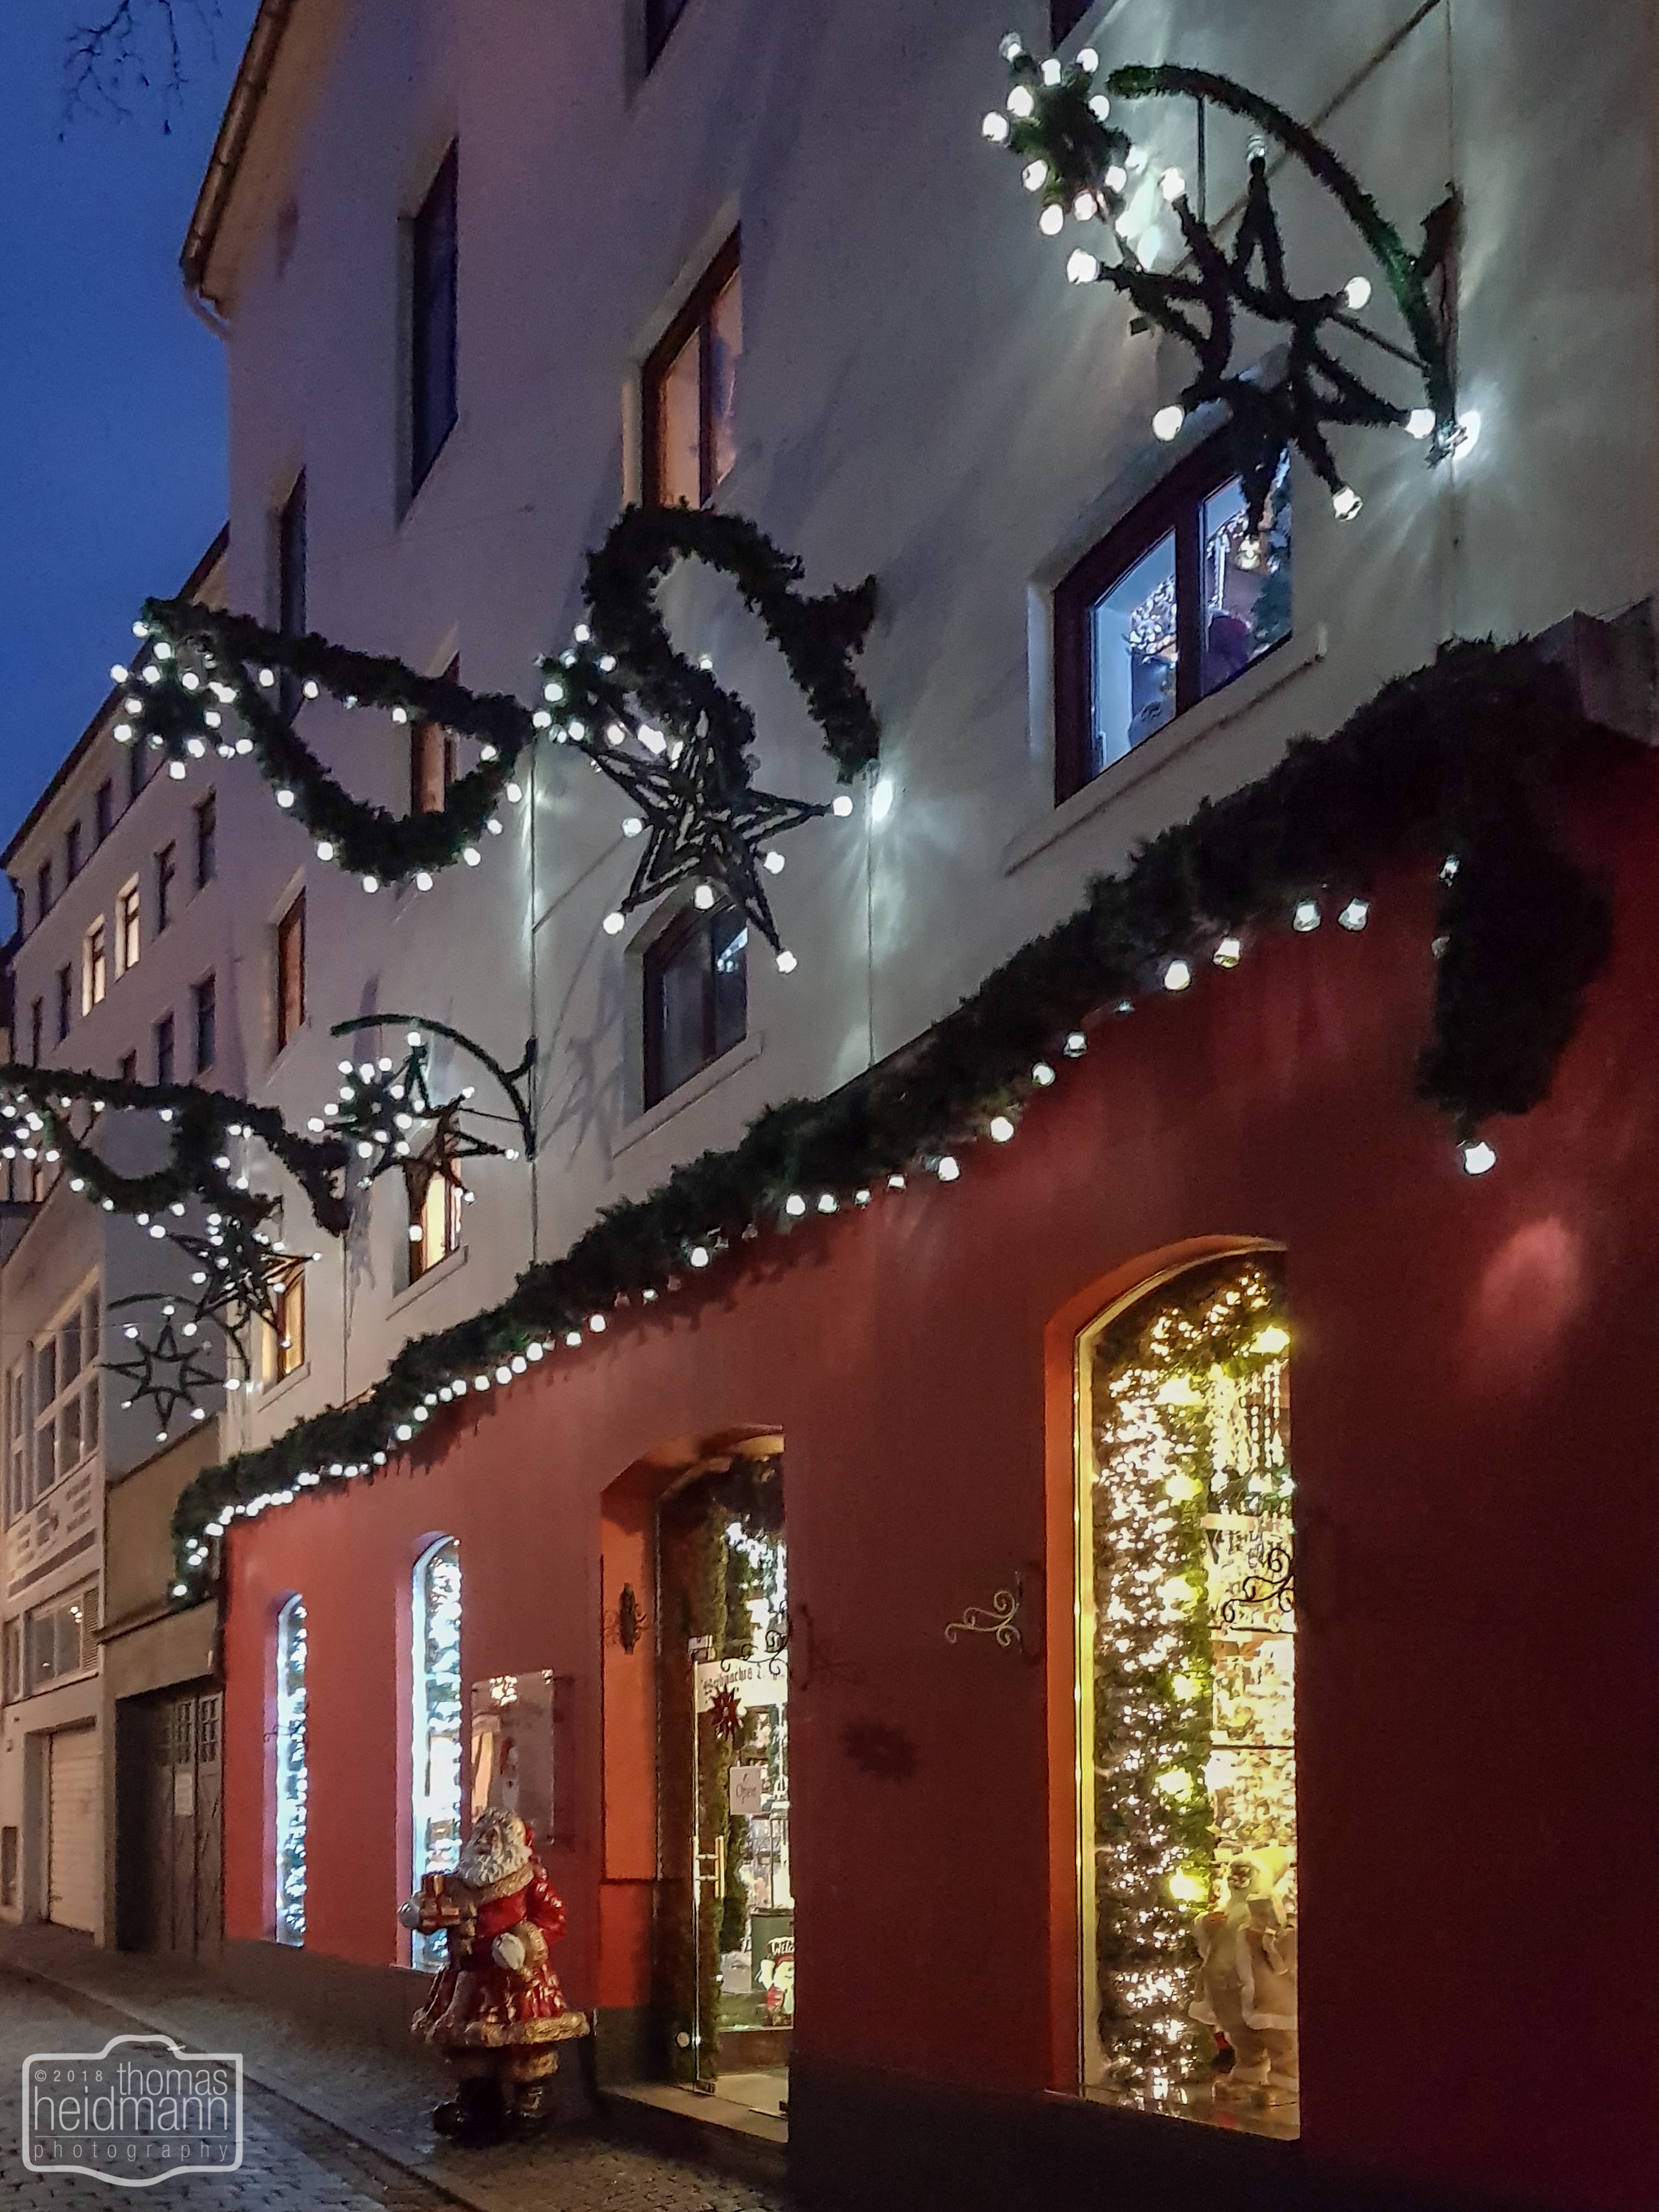 Weihnachtsladen am Schnoorviertel in Bremen